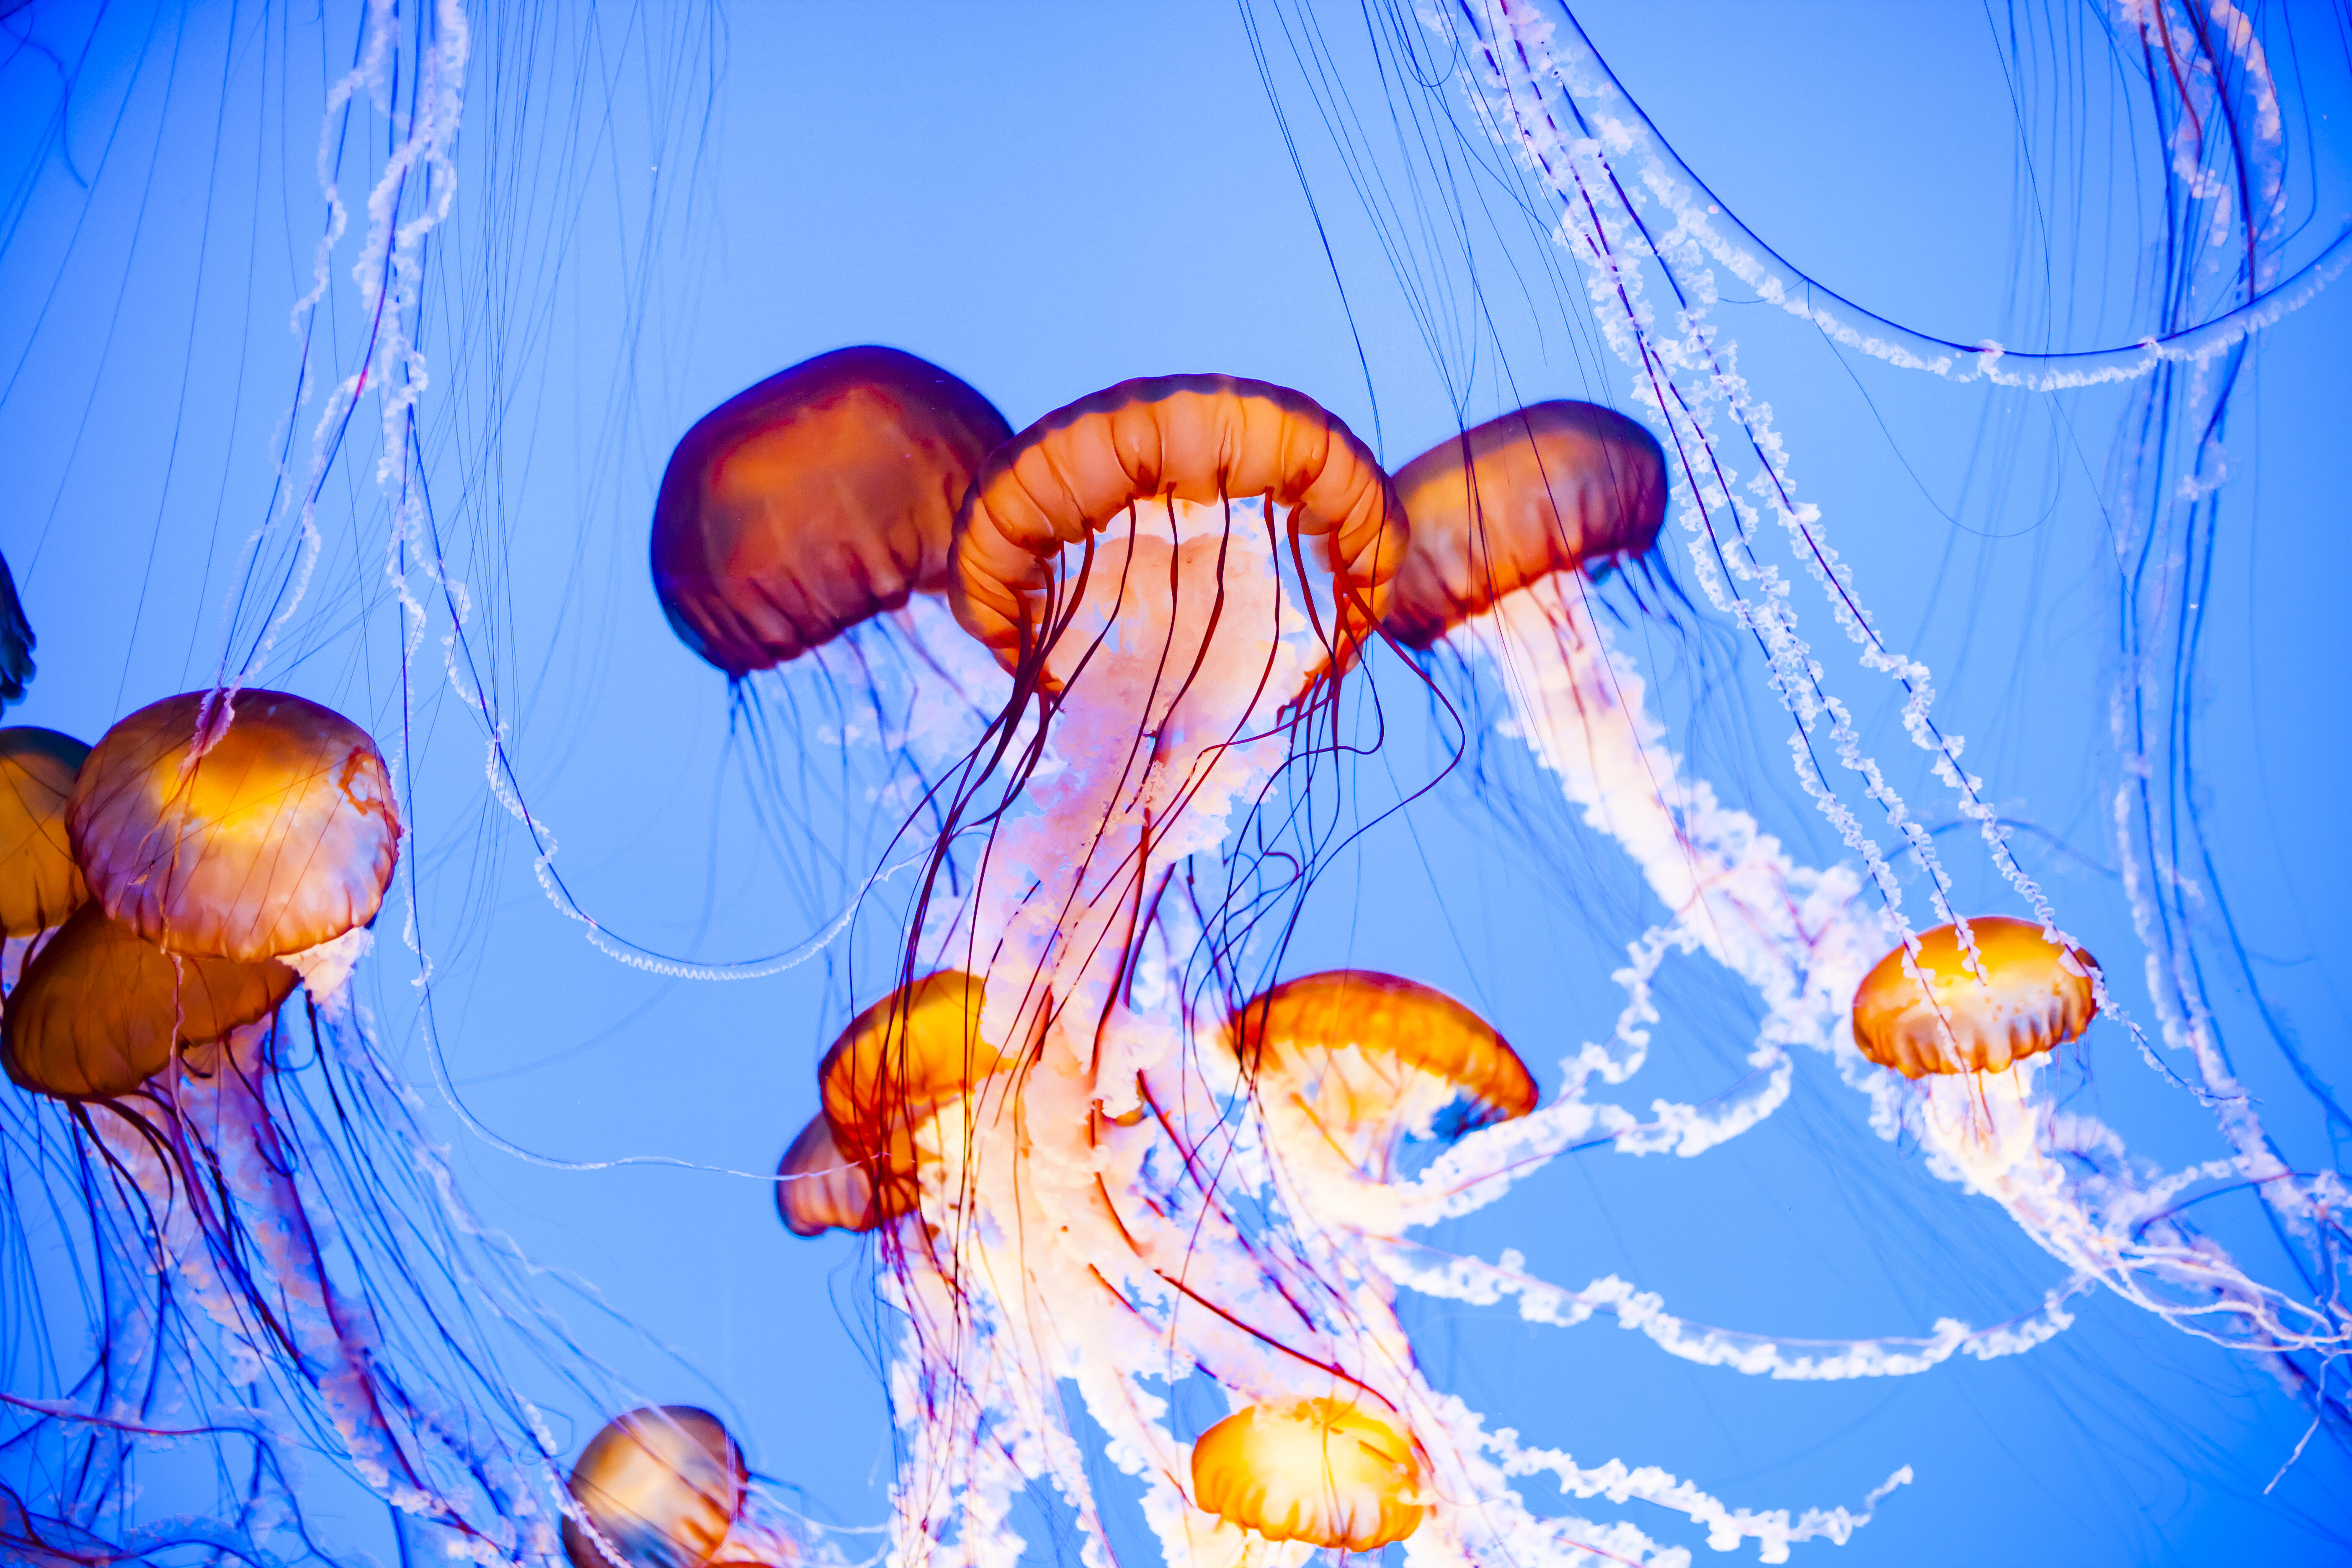 jellyfish stinging someone